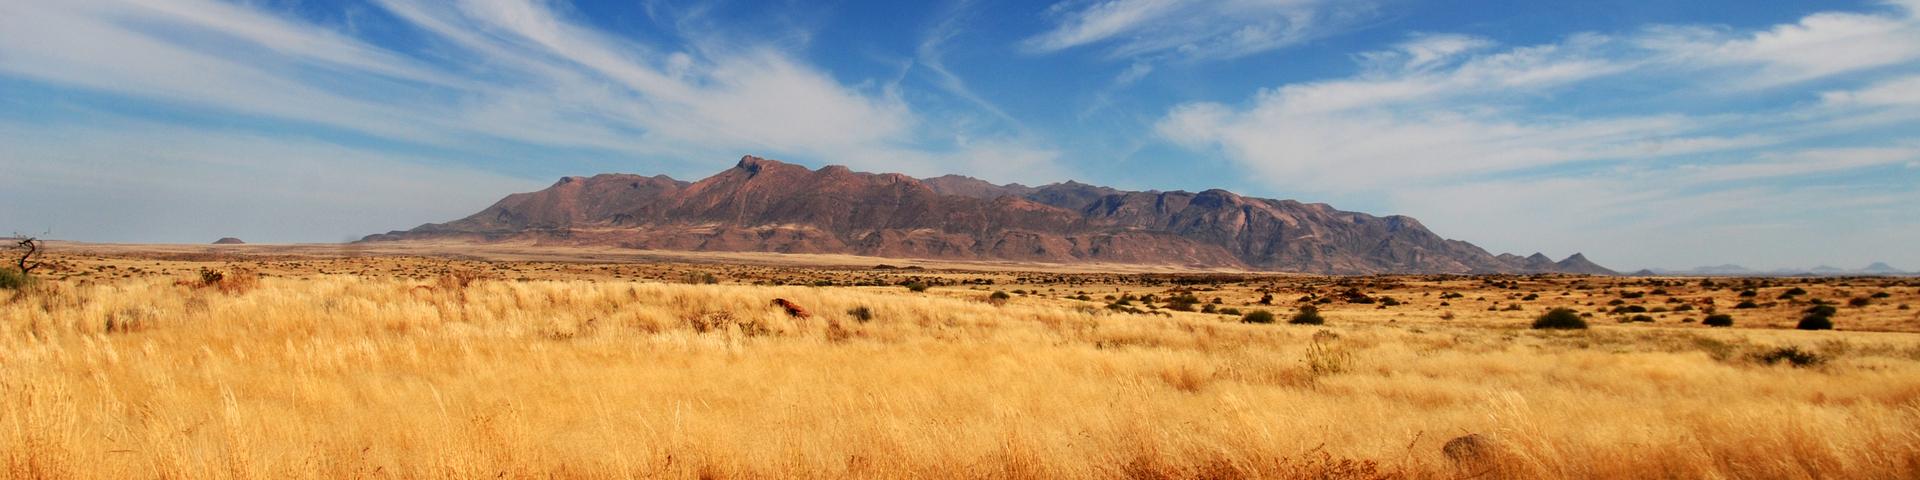 Massif du Brandberg, Namibie